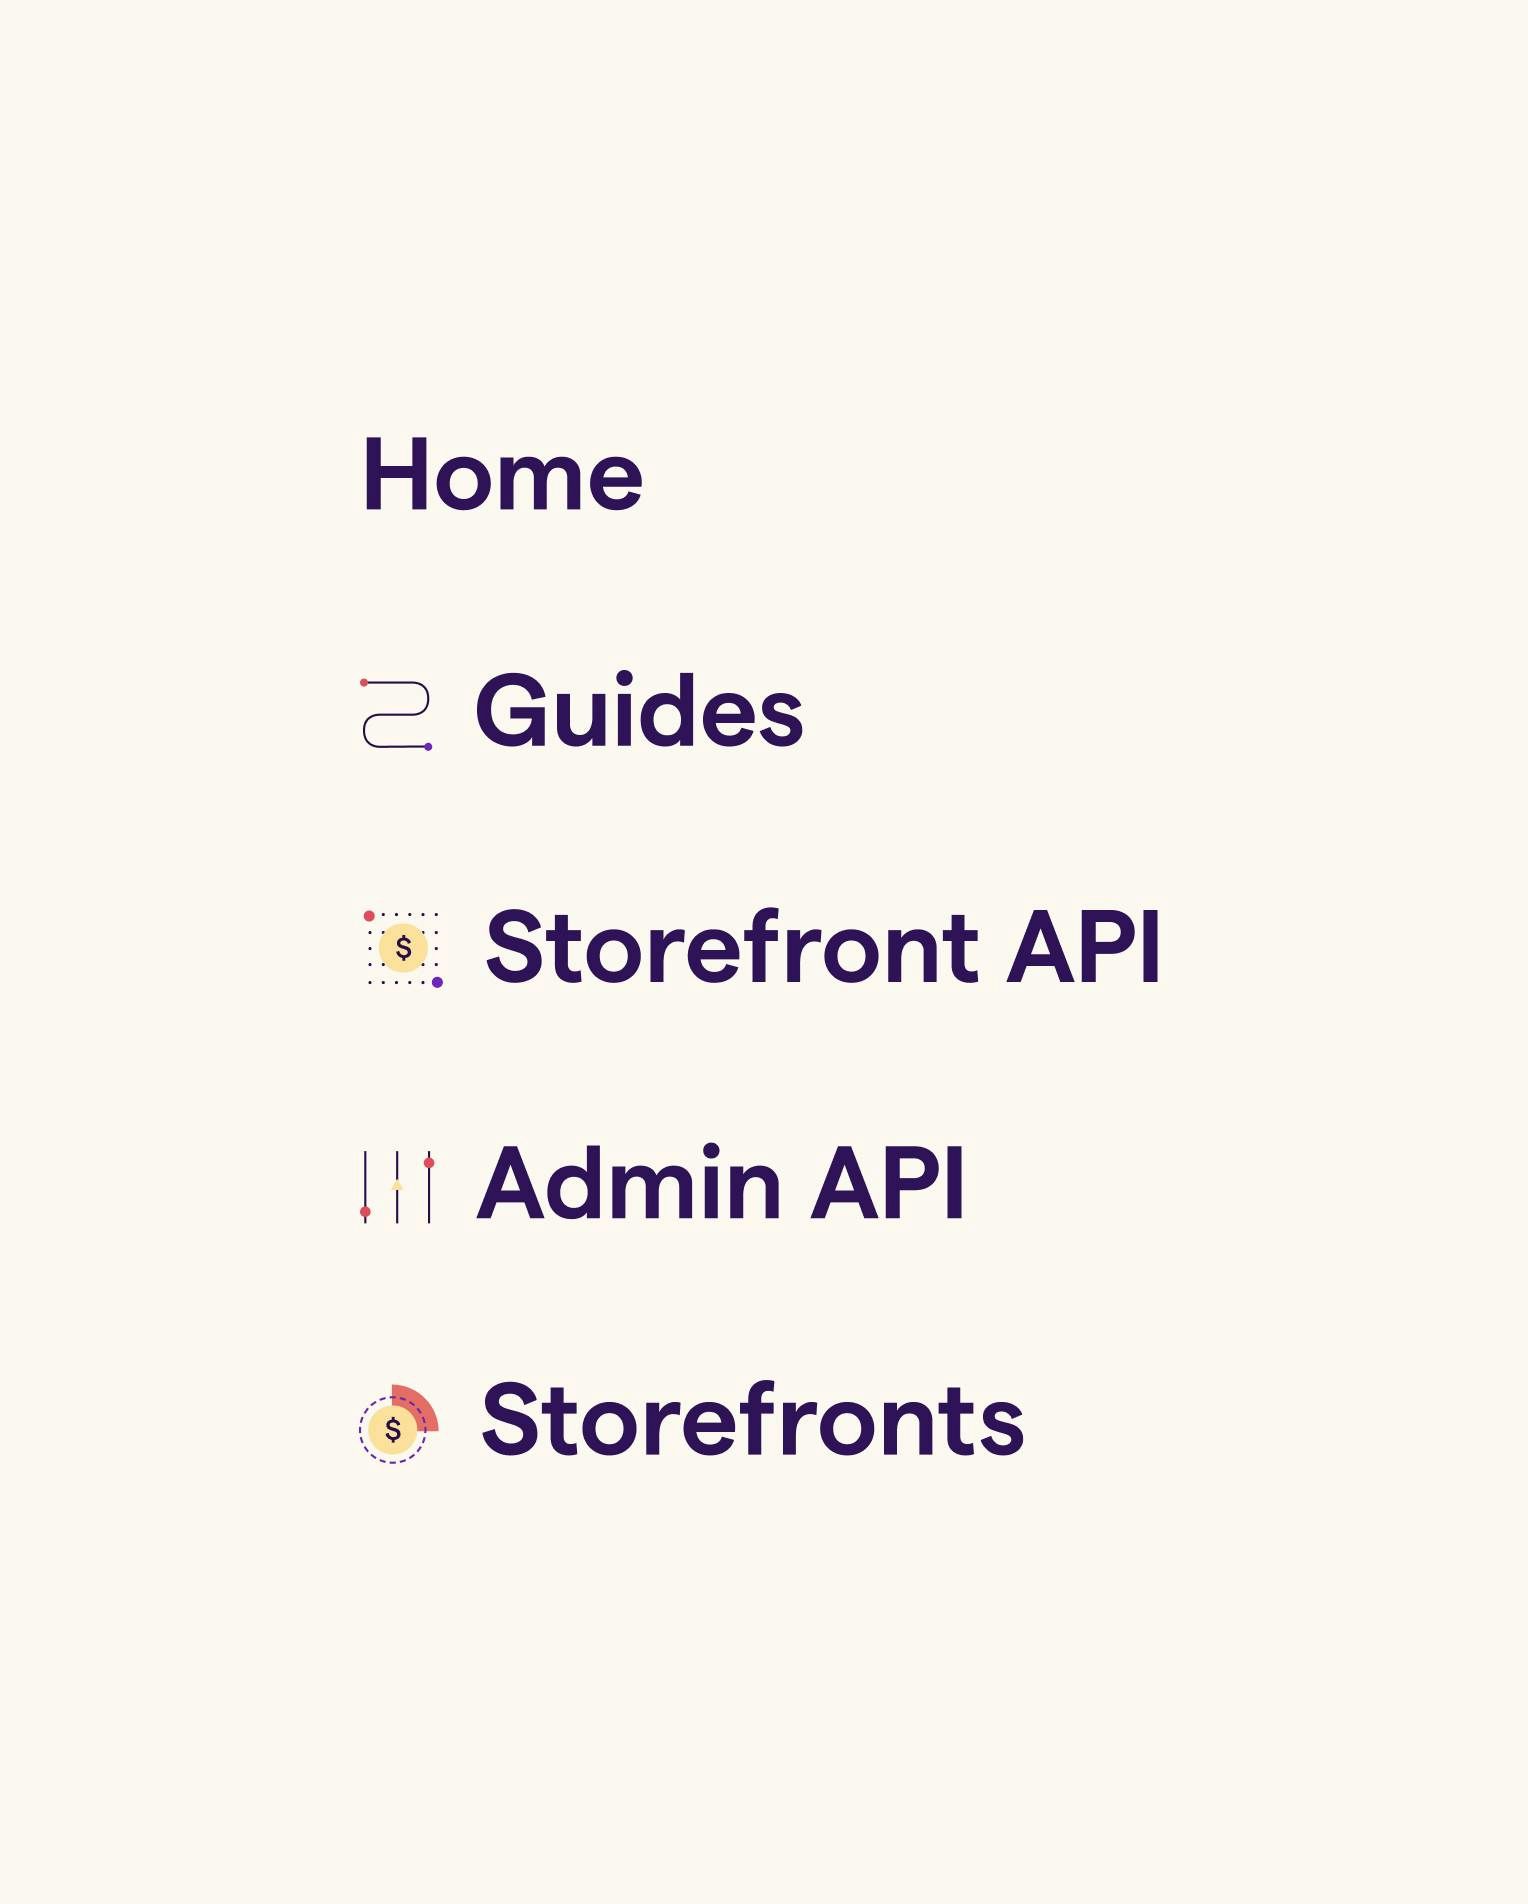 Menu items home, guides, Storefront API, Admin API, Storefronts